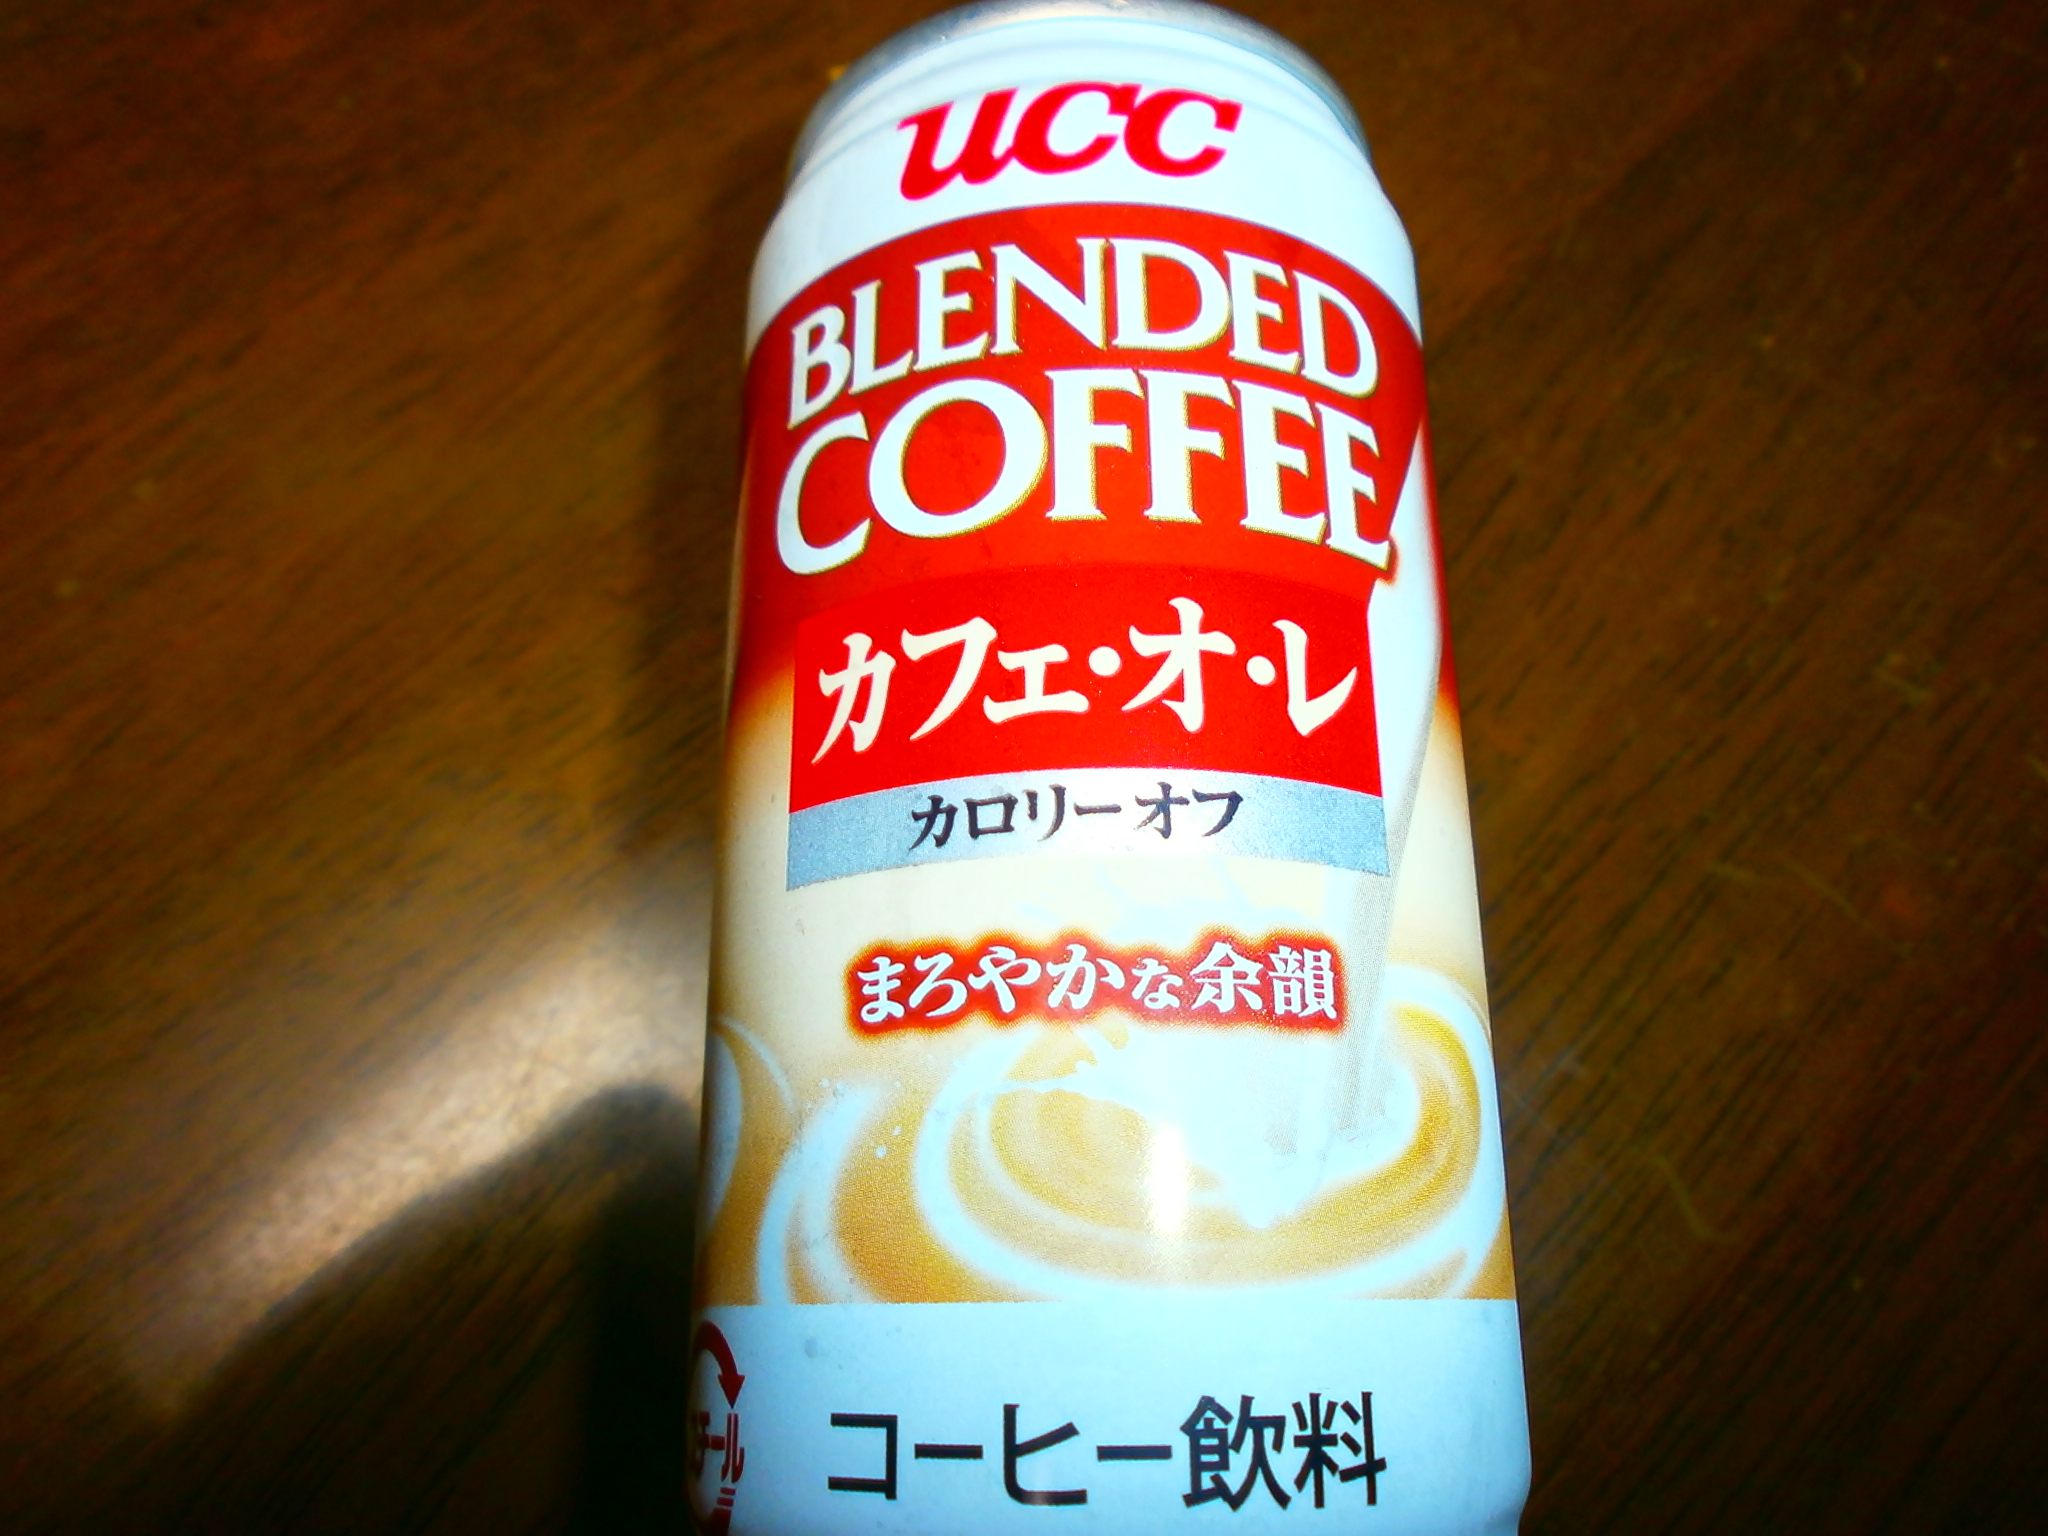 Café con leche calorías (UCC)